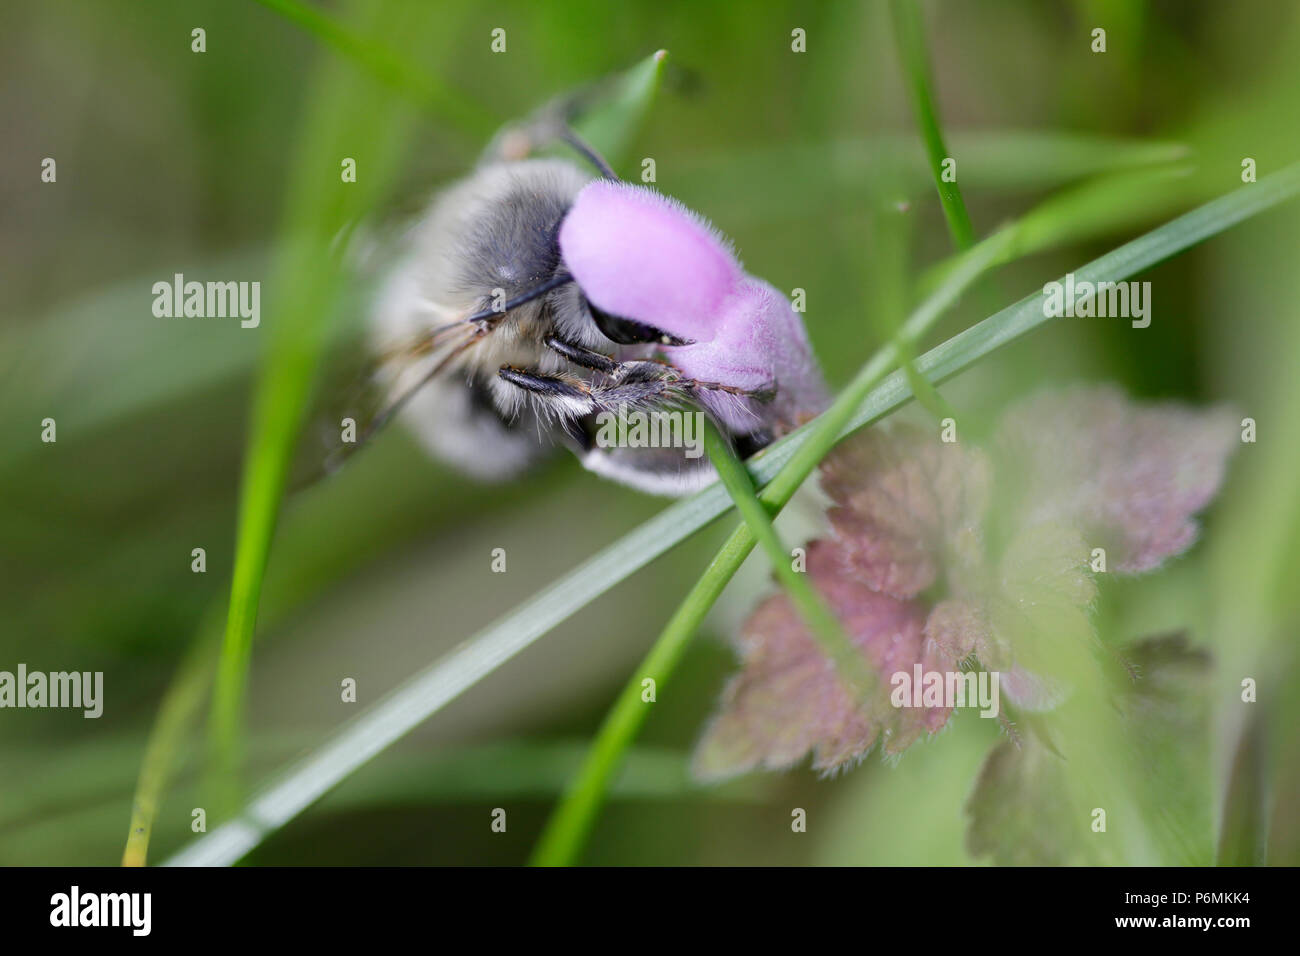 Hoppegarten, Deutschland - wilde Biene sammelt Nektar aus einer Lila Blume Stockfoto